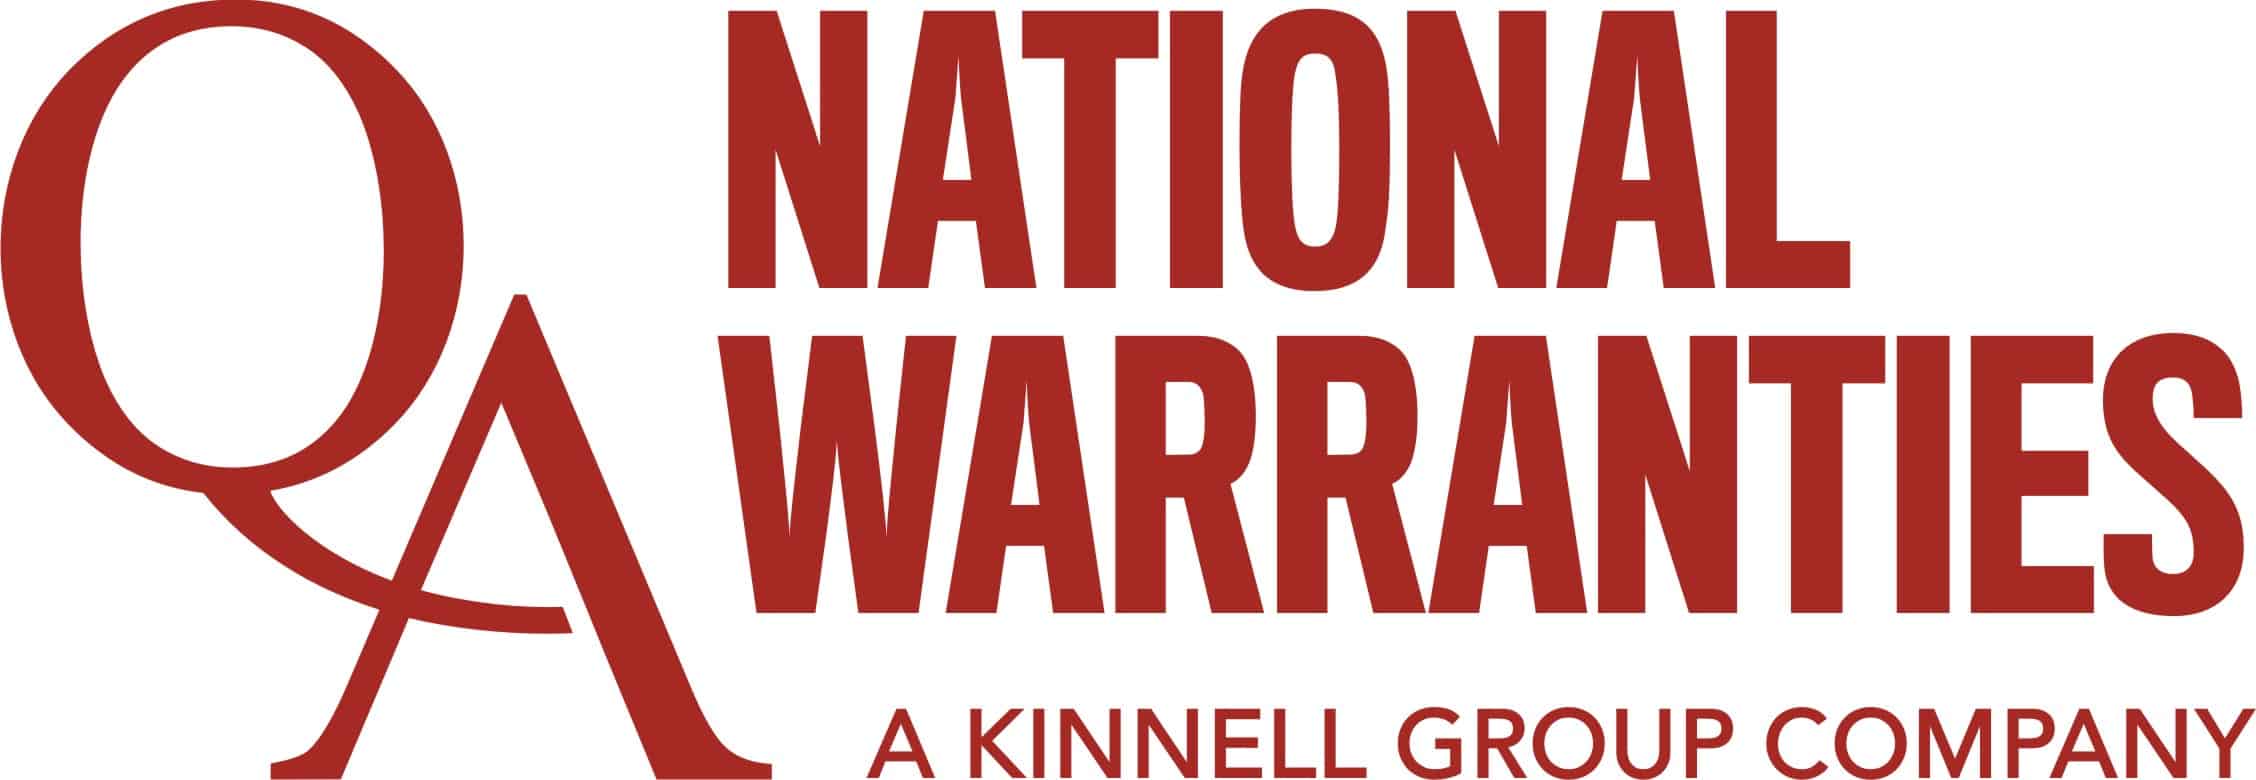 National Warranties